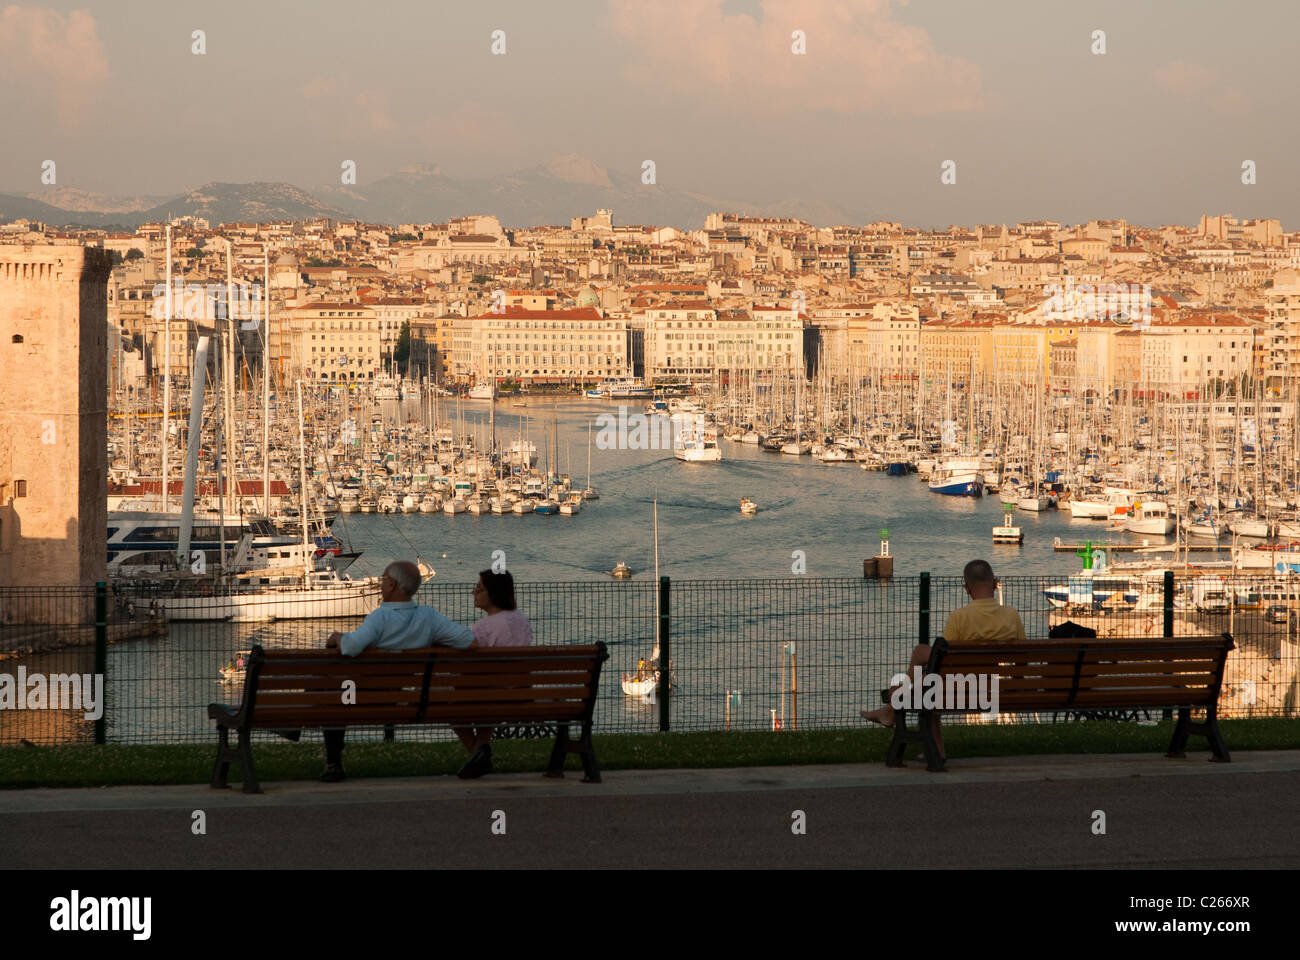 La vista panorámica de Marsella, el puerto antiguo y el Bouches du Rhone. Foto de stock